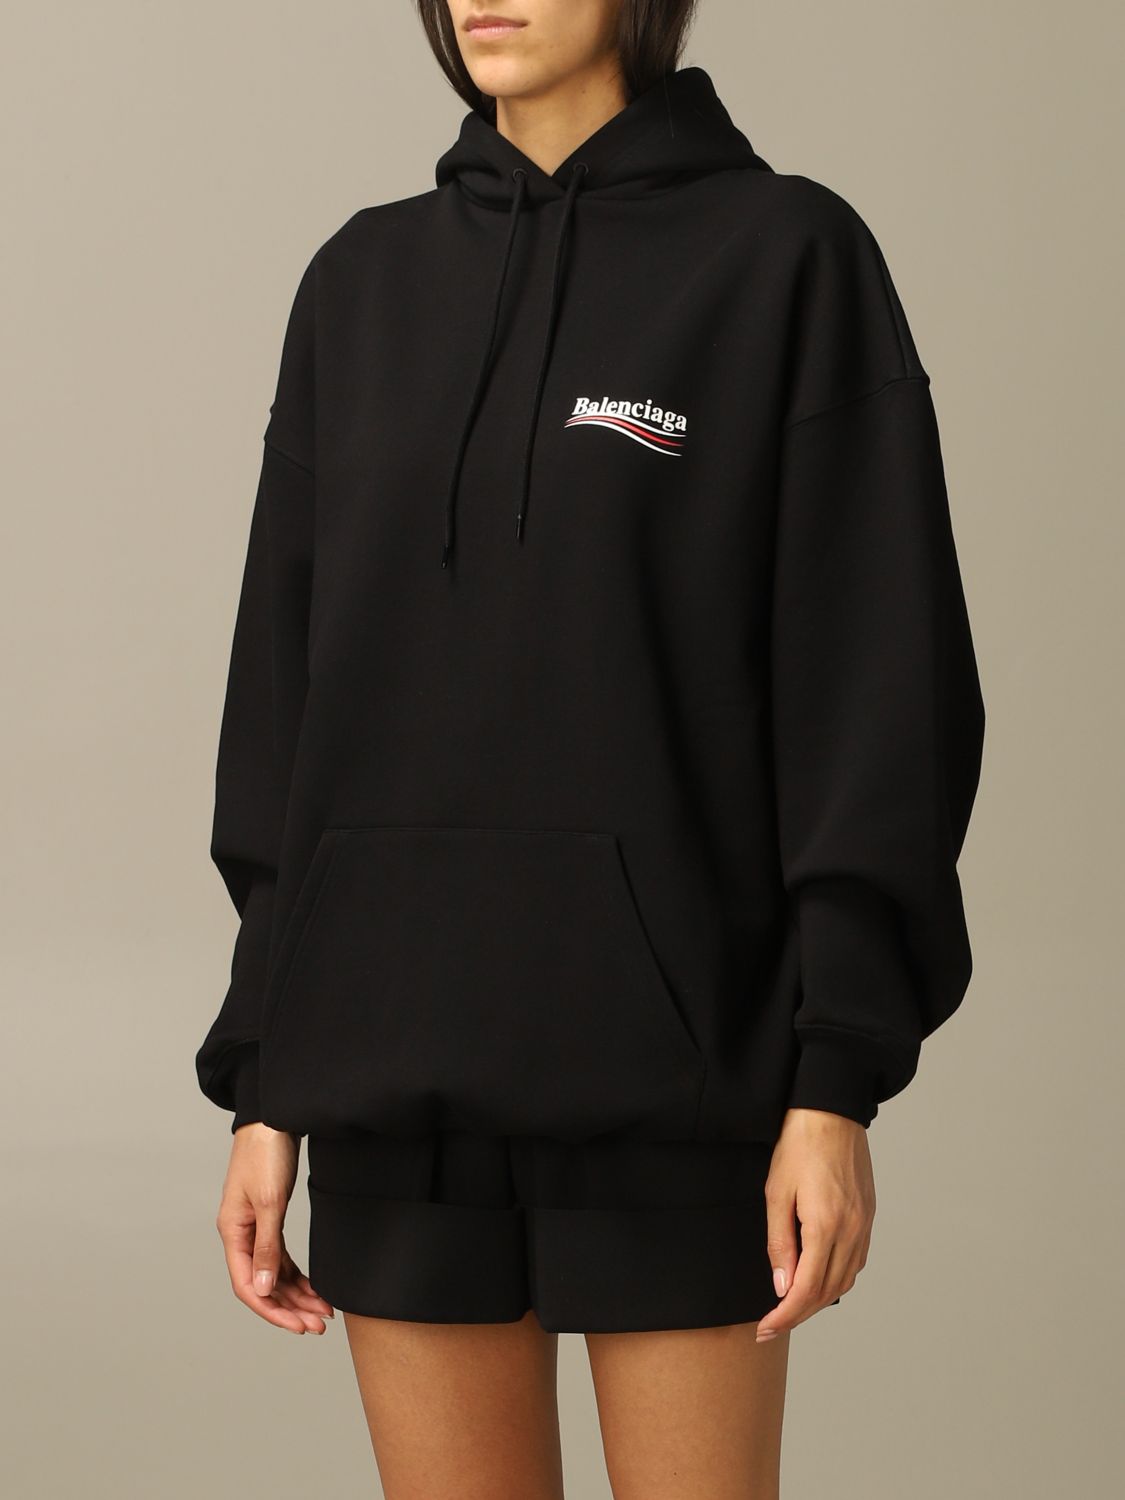 Balenciaga hoodies  zipups for Women  SSENSE